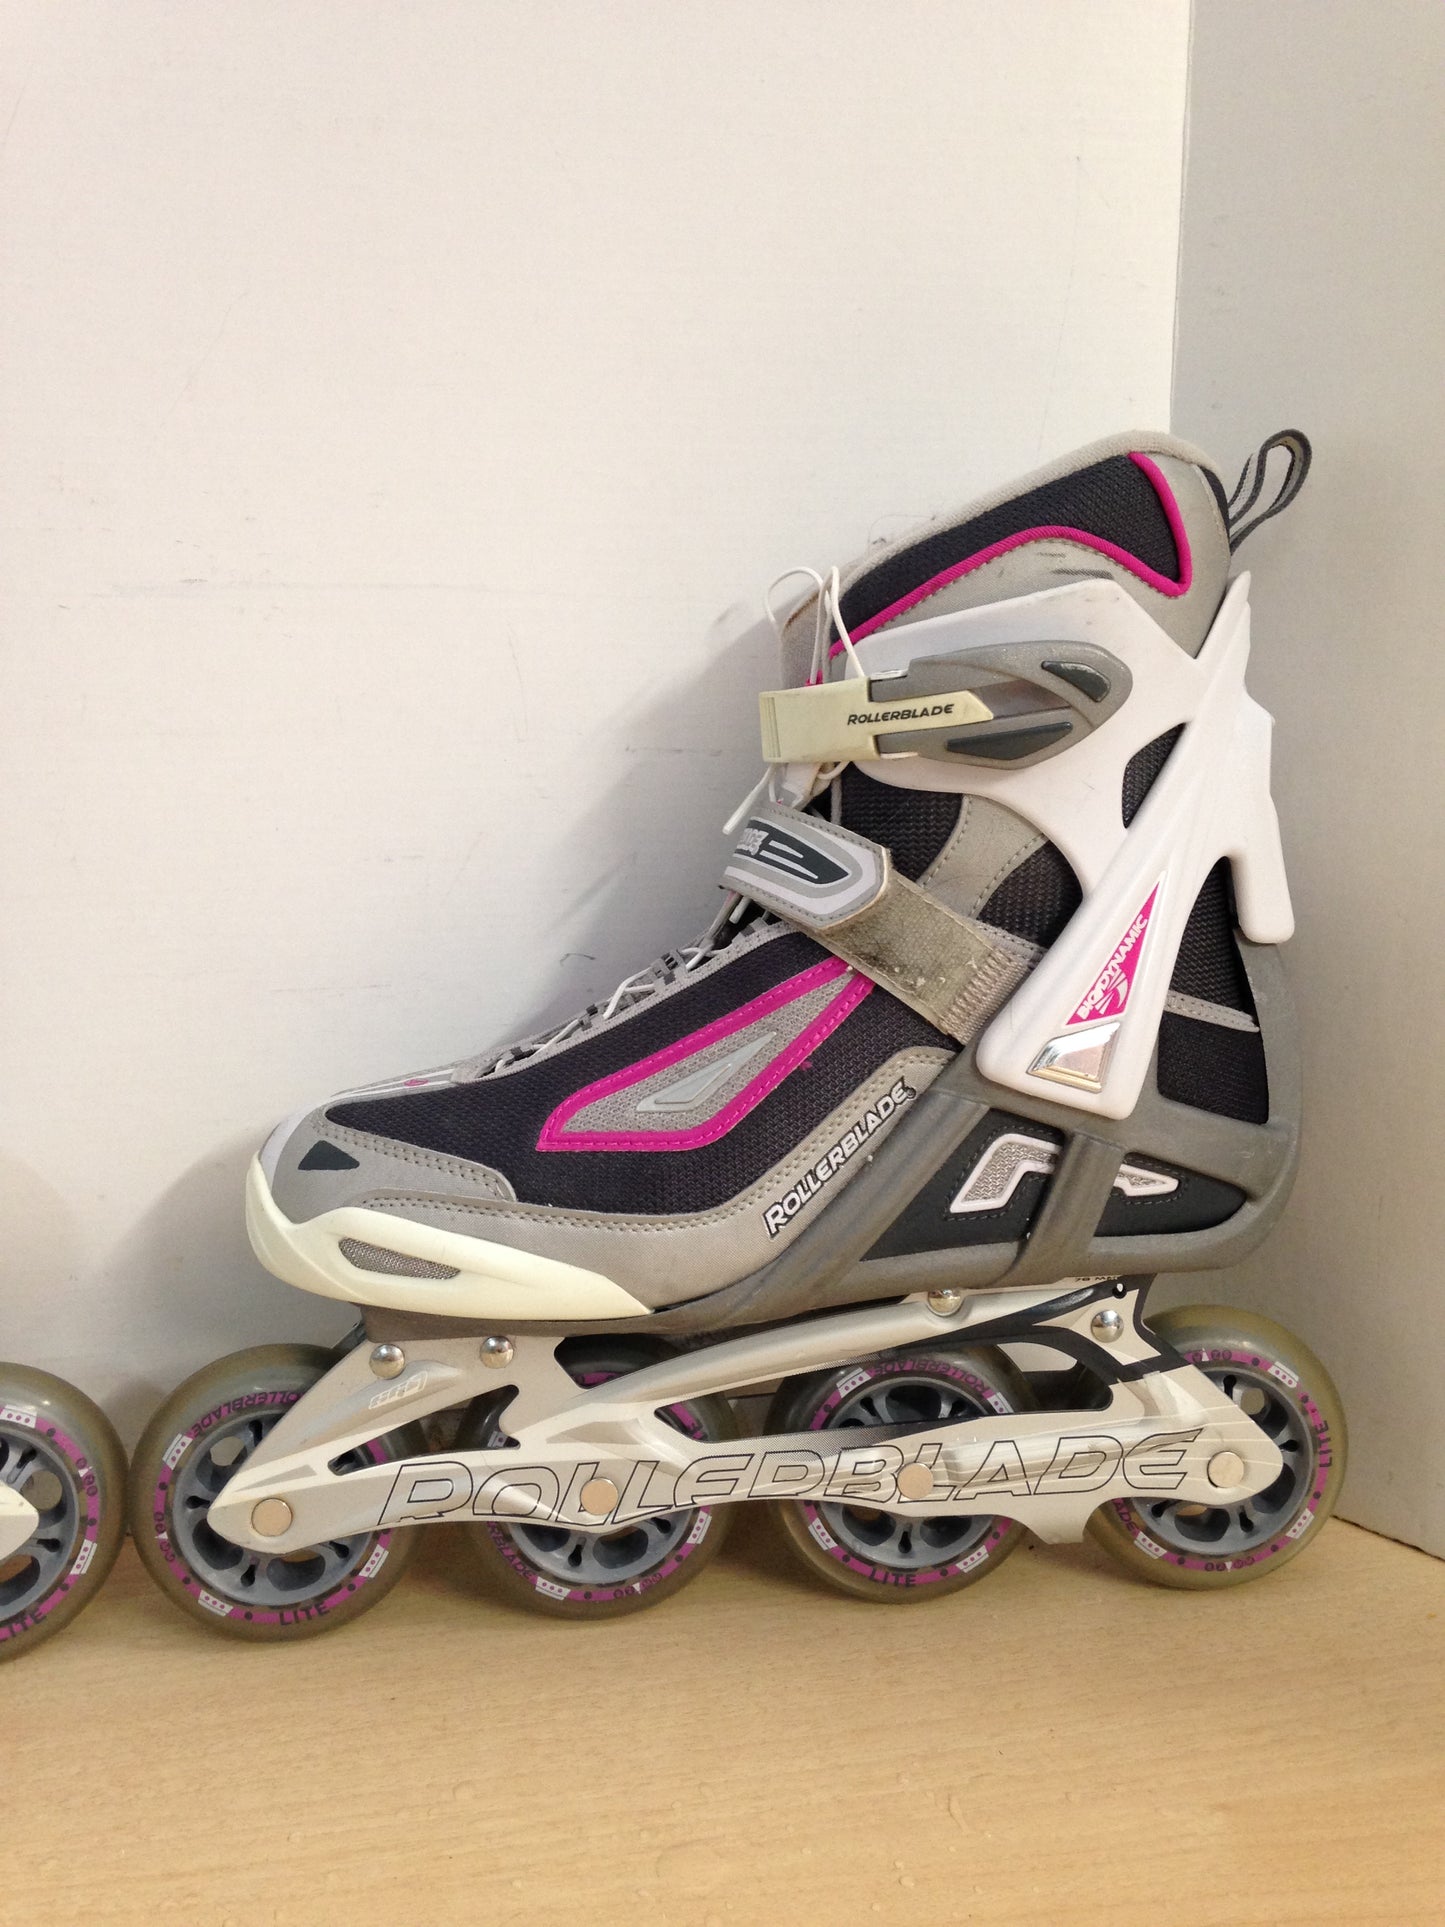 Inline Roller Skates Ladies Size 9 Rollerblades White Pink Excellent